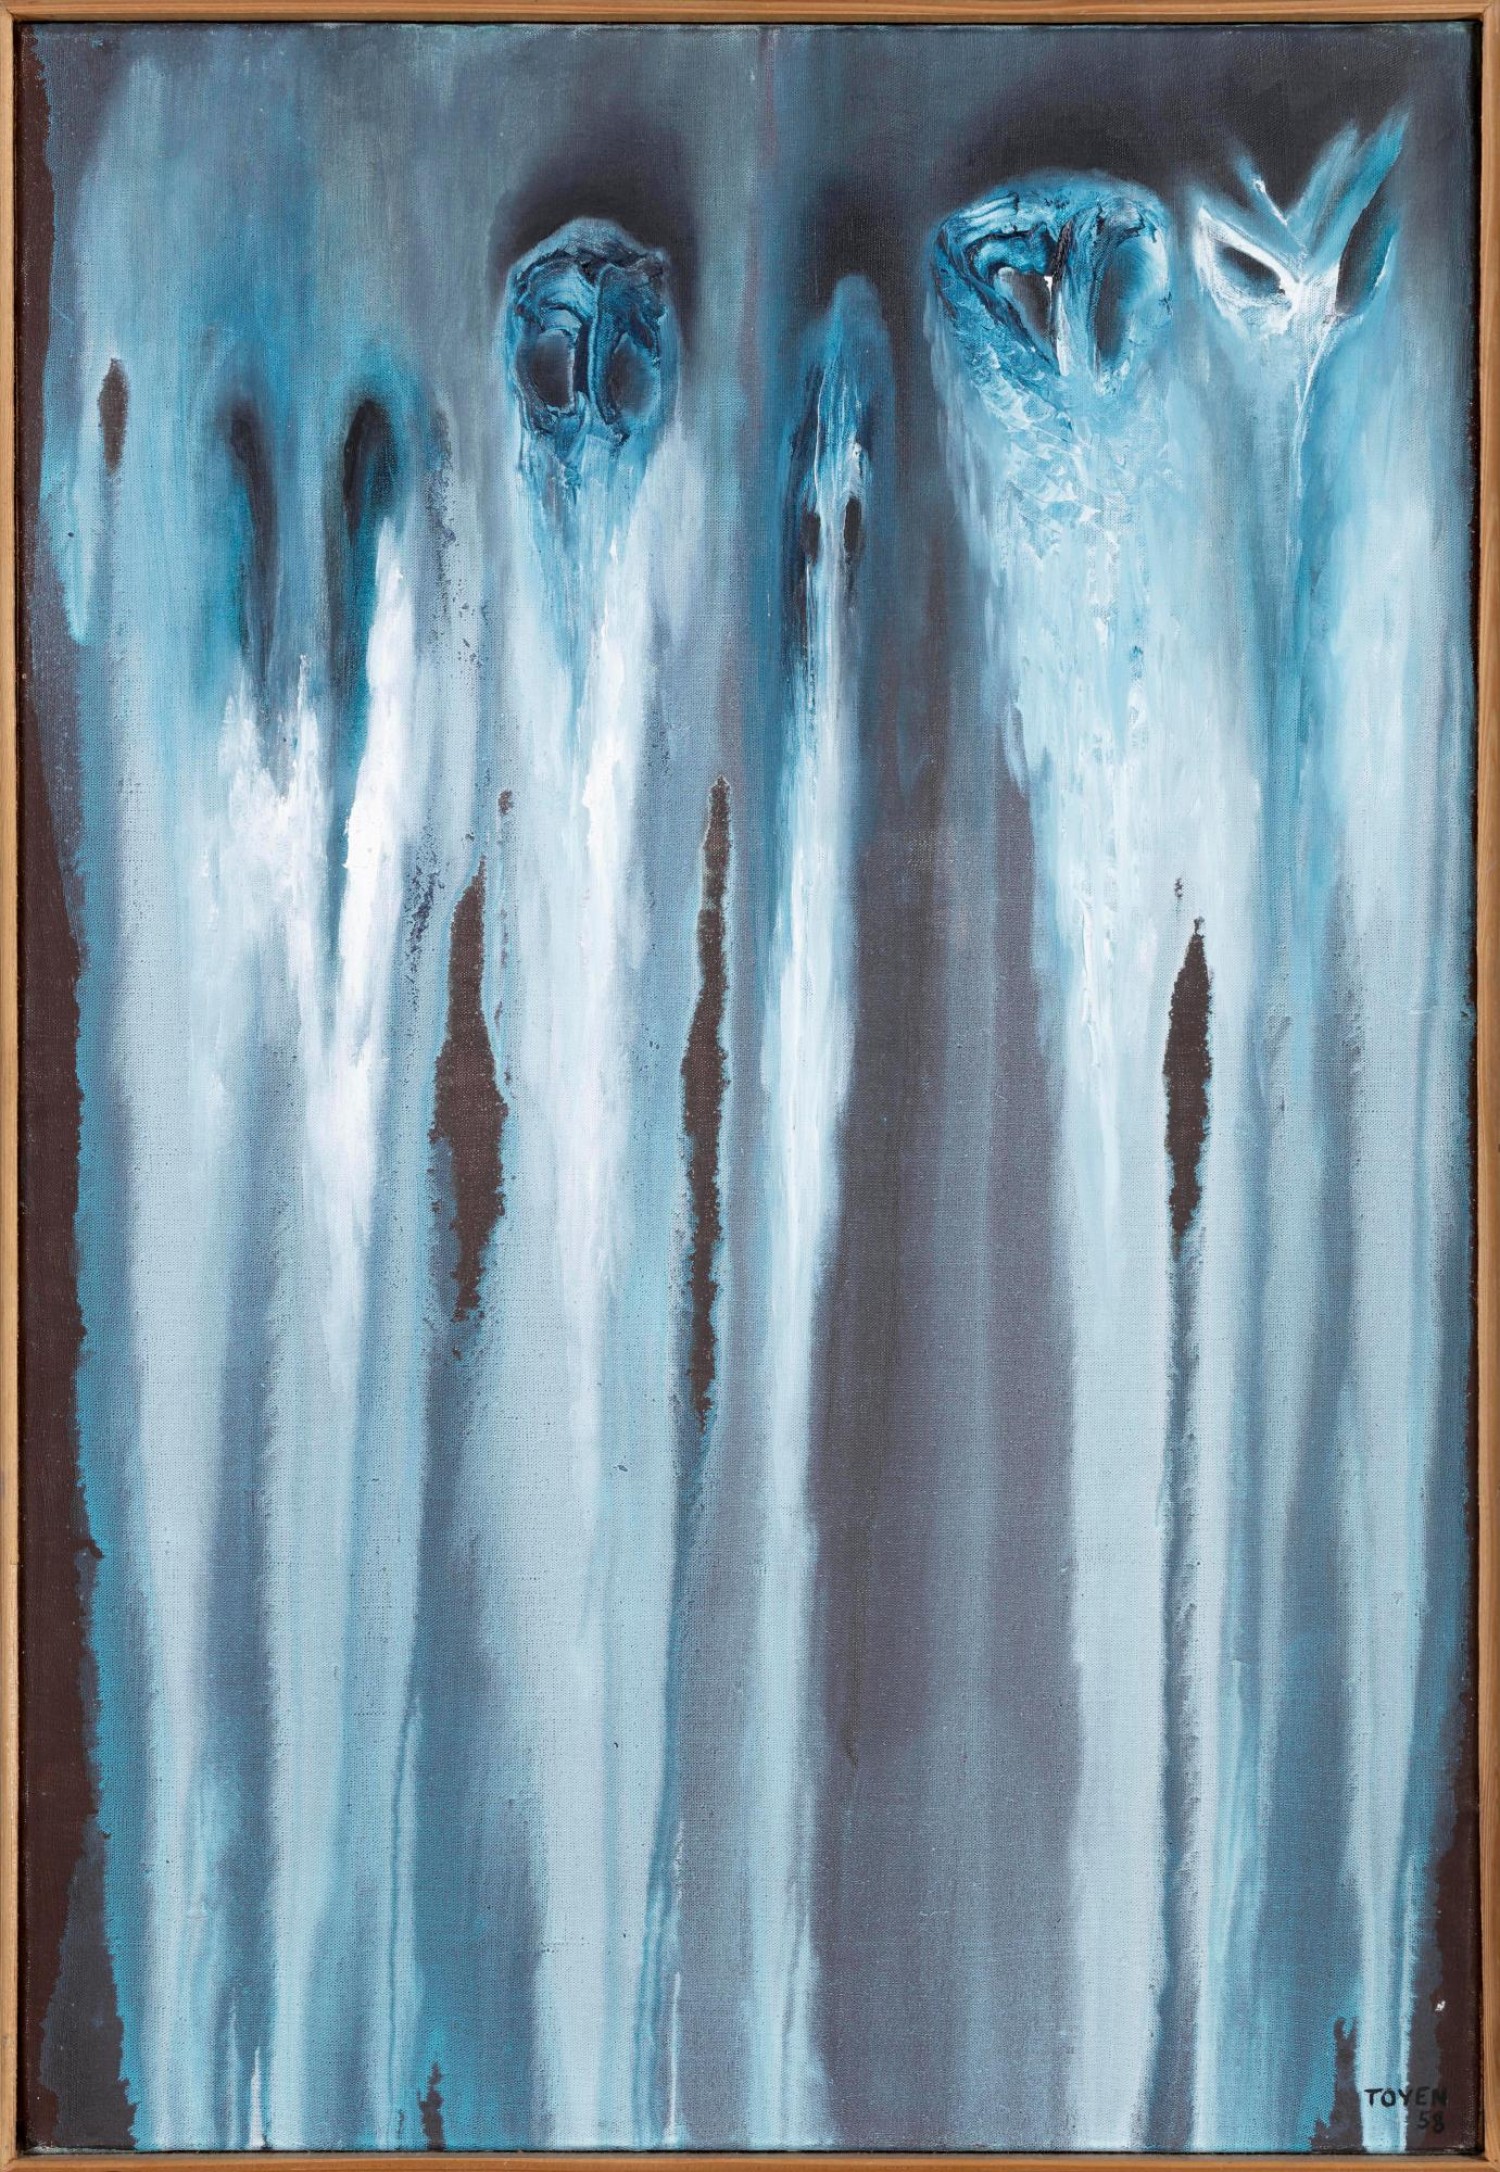 Toyen: Dýchání spánku, 1958, olej na plátně, 65,5 x 46 cm,  cena: 18 150 000 Kč, Adolf Loos Apartment and Gallery 27. 11. 2021